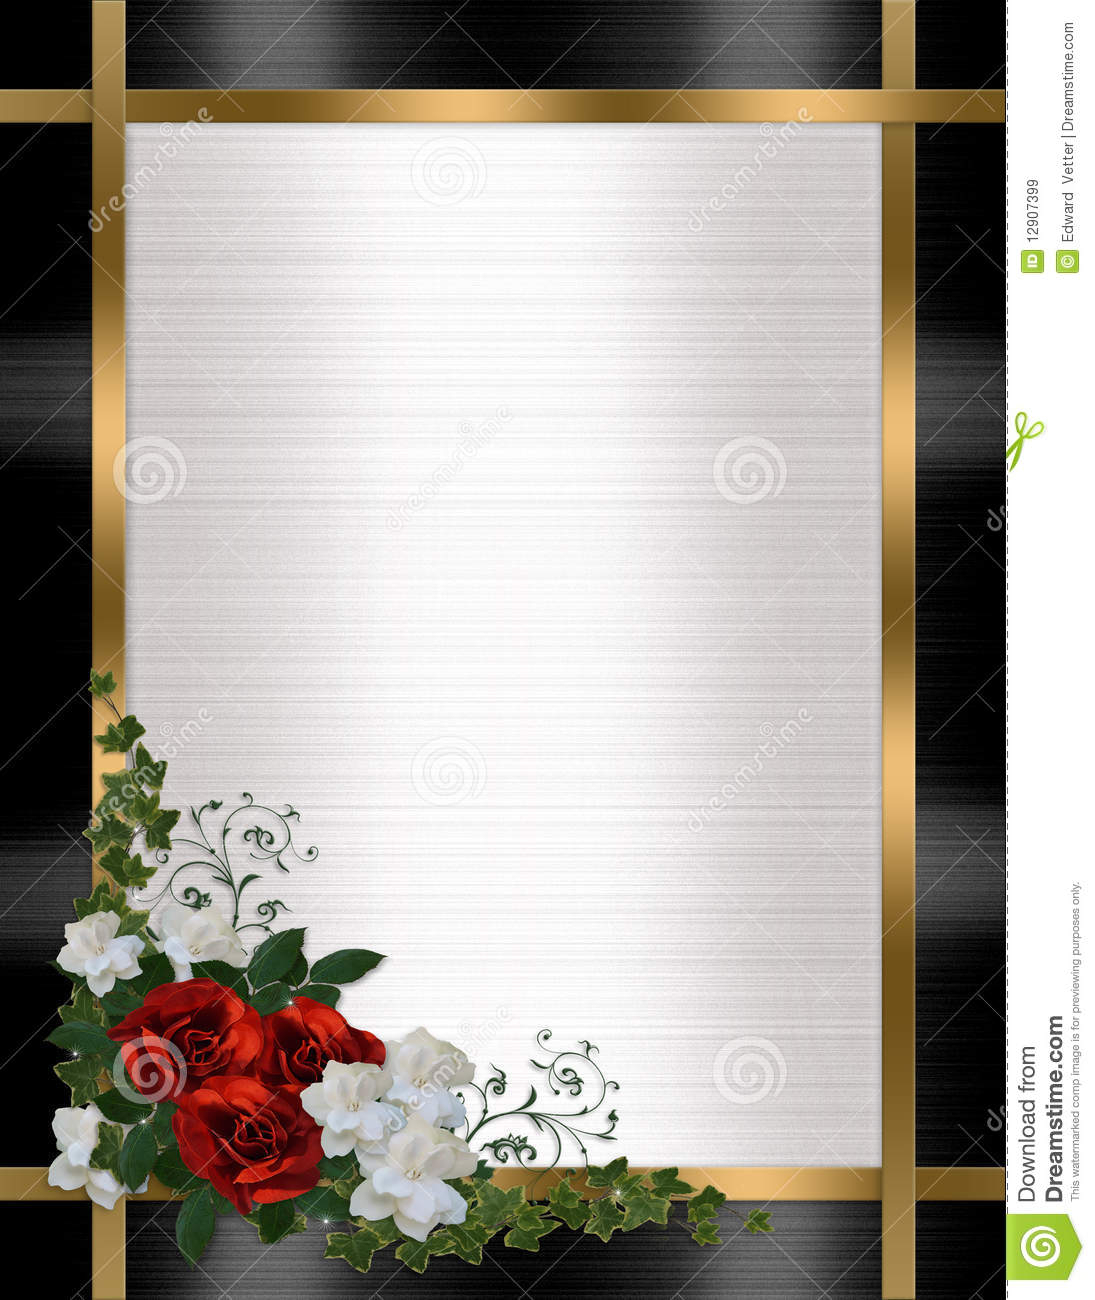 Roses De Rouge De Cadre D&amp;#039;Invitation De Mariage Images tout Cadre Pour Carte D Invitation